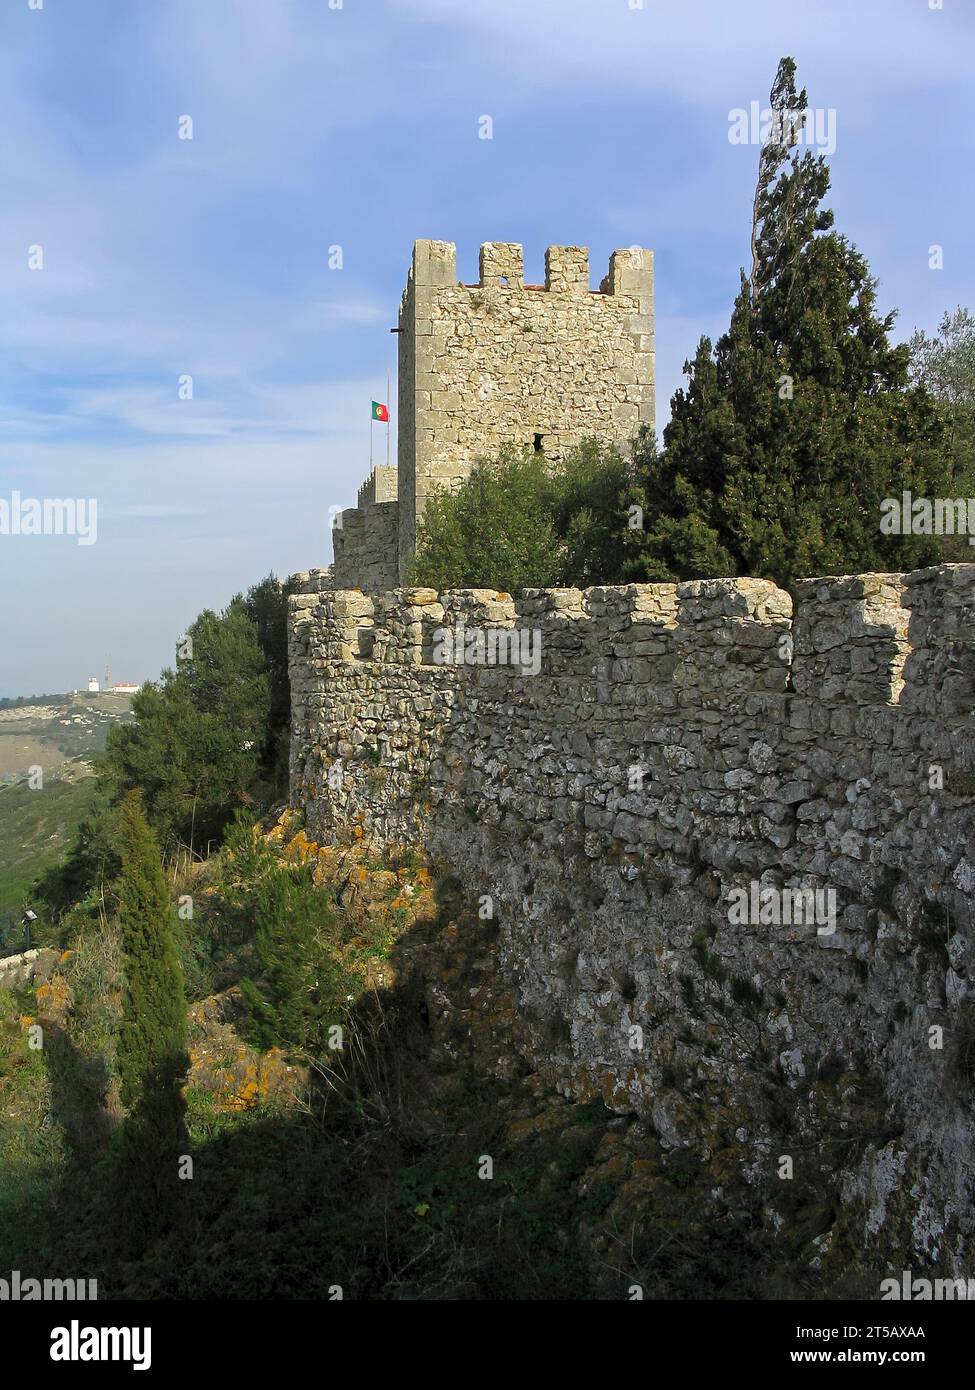 Castello medievale di Sesimbra, Portogallo. Vista del muro difensivo e della torre di guardia che si affaccia sul paesaggio Foto Stock